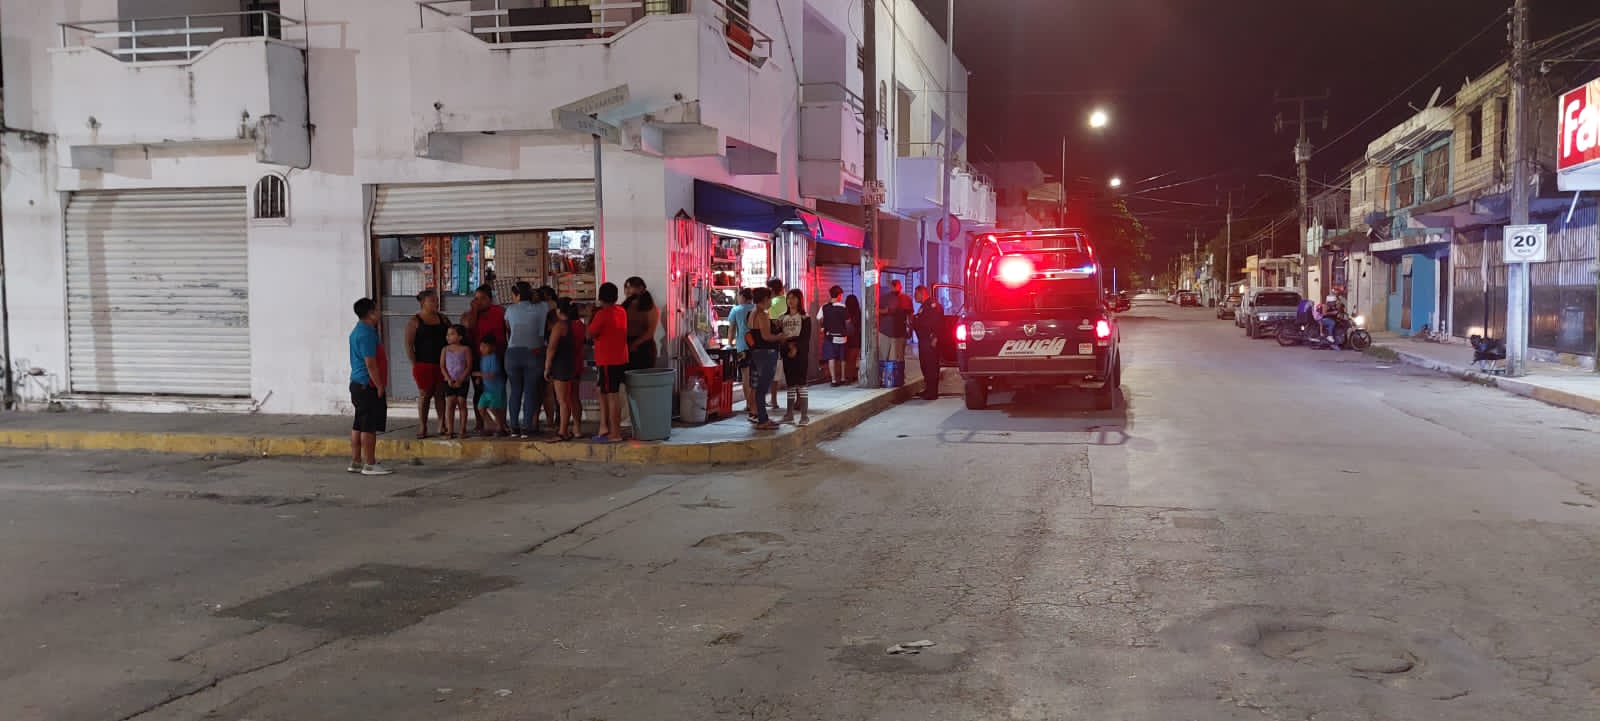 Asaltan a mujer al salir de una tienda en Playa del Carmen; hay un detenido